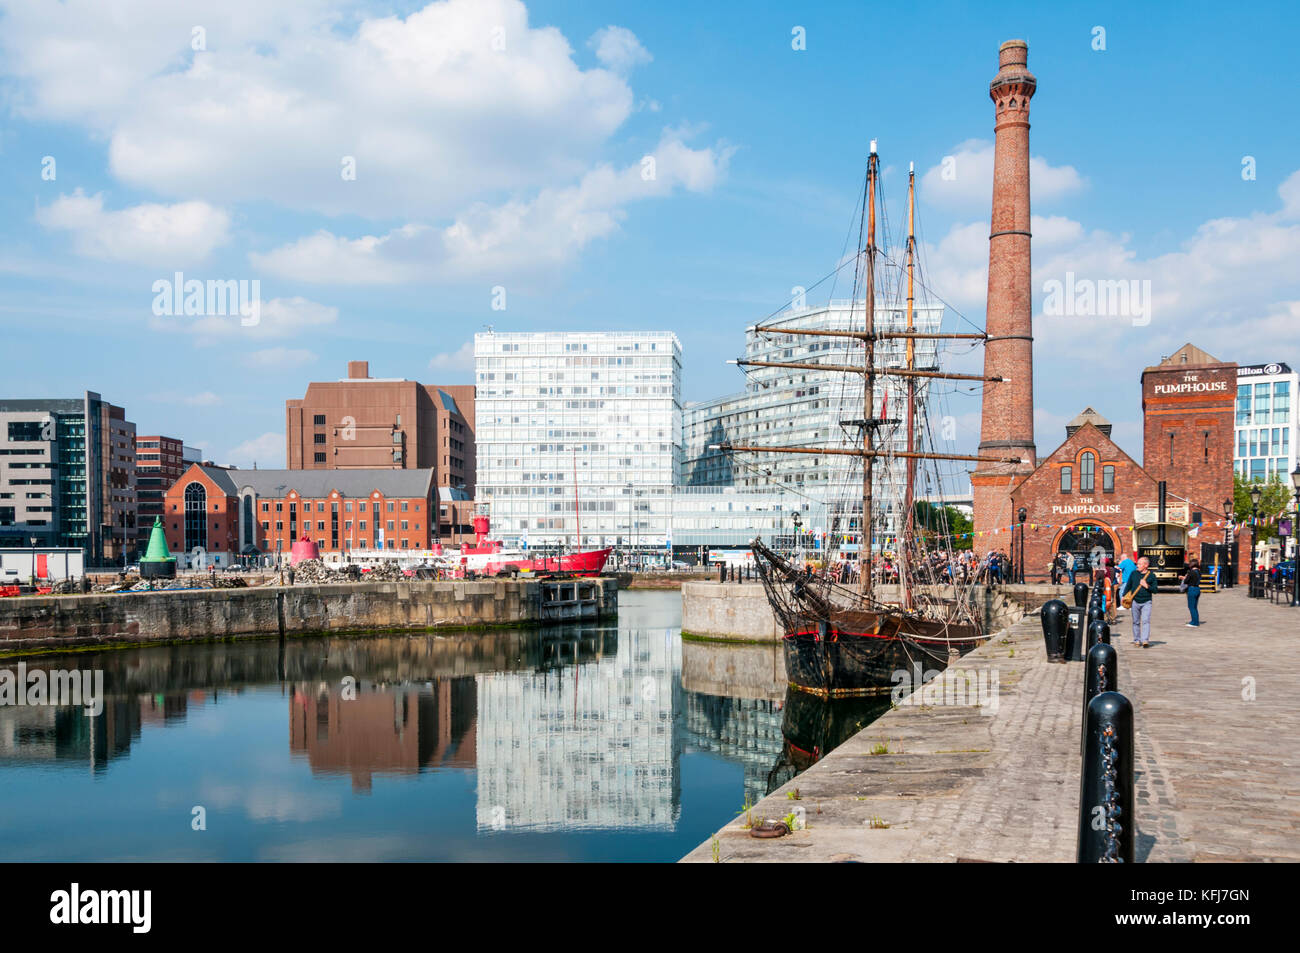 Der canning Dock mit restaurierten historischen Tall Ship Zebu und das Pumpenhaus Public House in Liverpools restaurierte Hafenviertel. Stockfoto